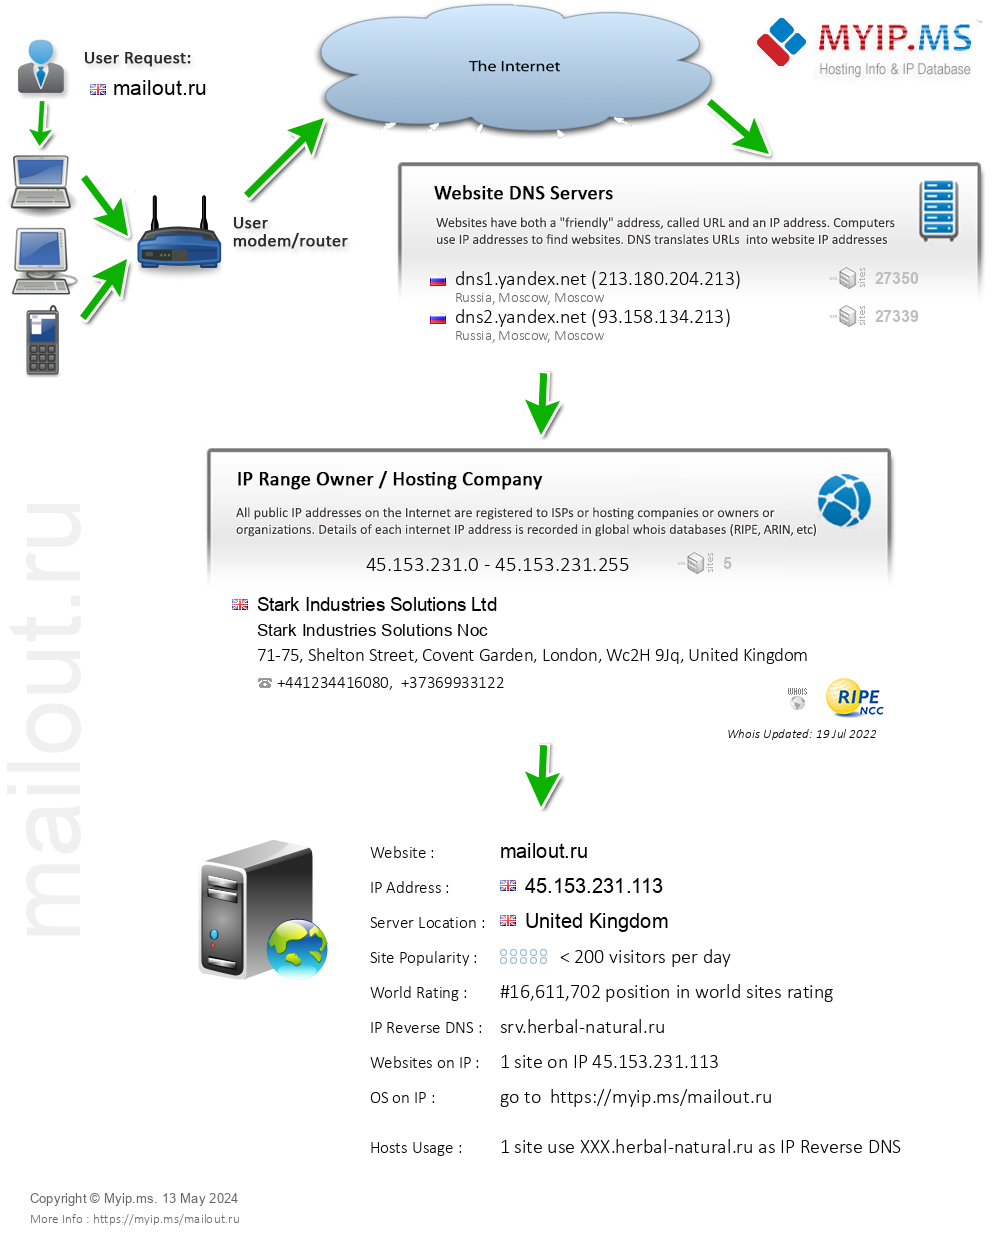 Mailout.ru - Website Hosting Visual IP Diagram